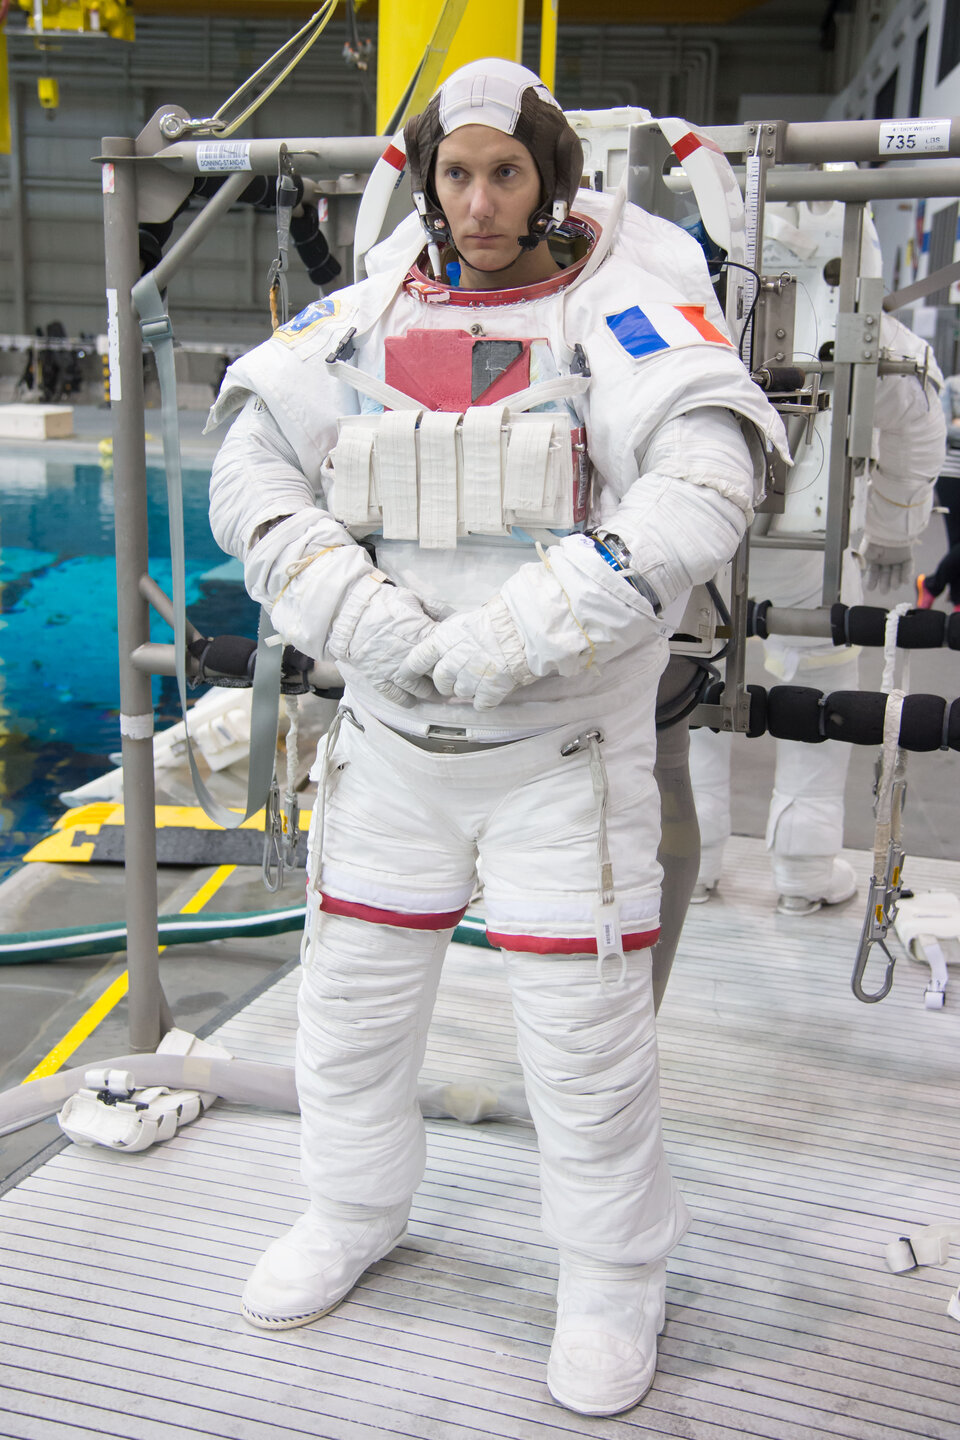 Spacewalk training